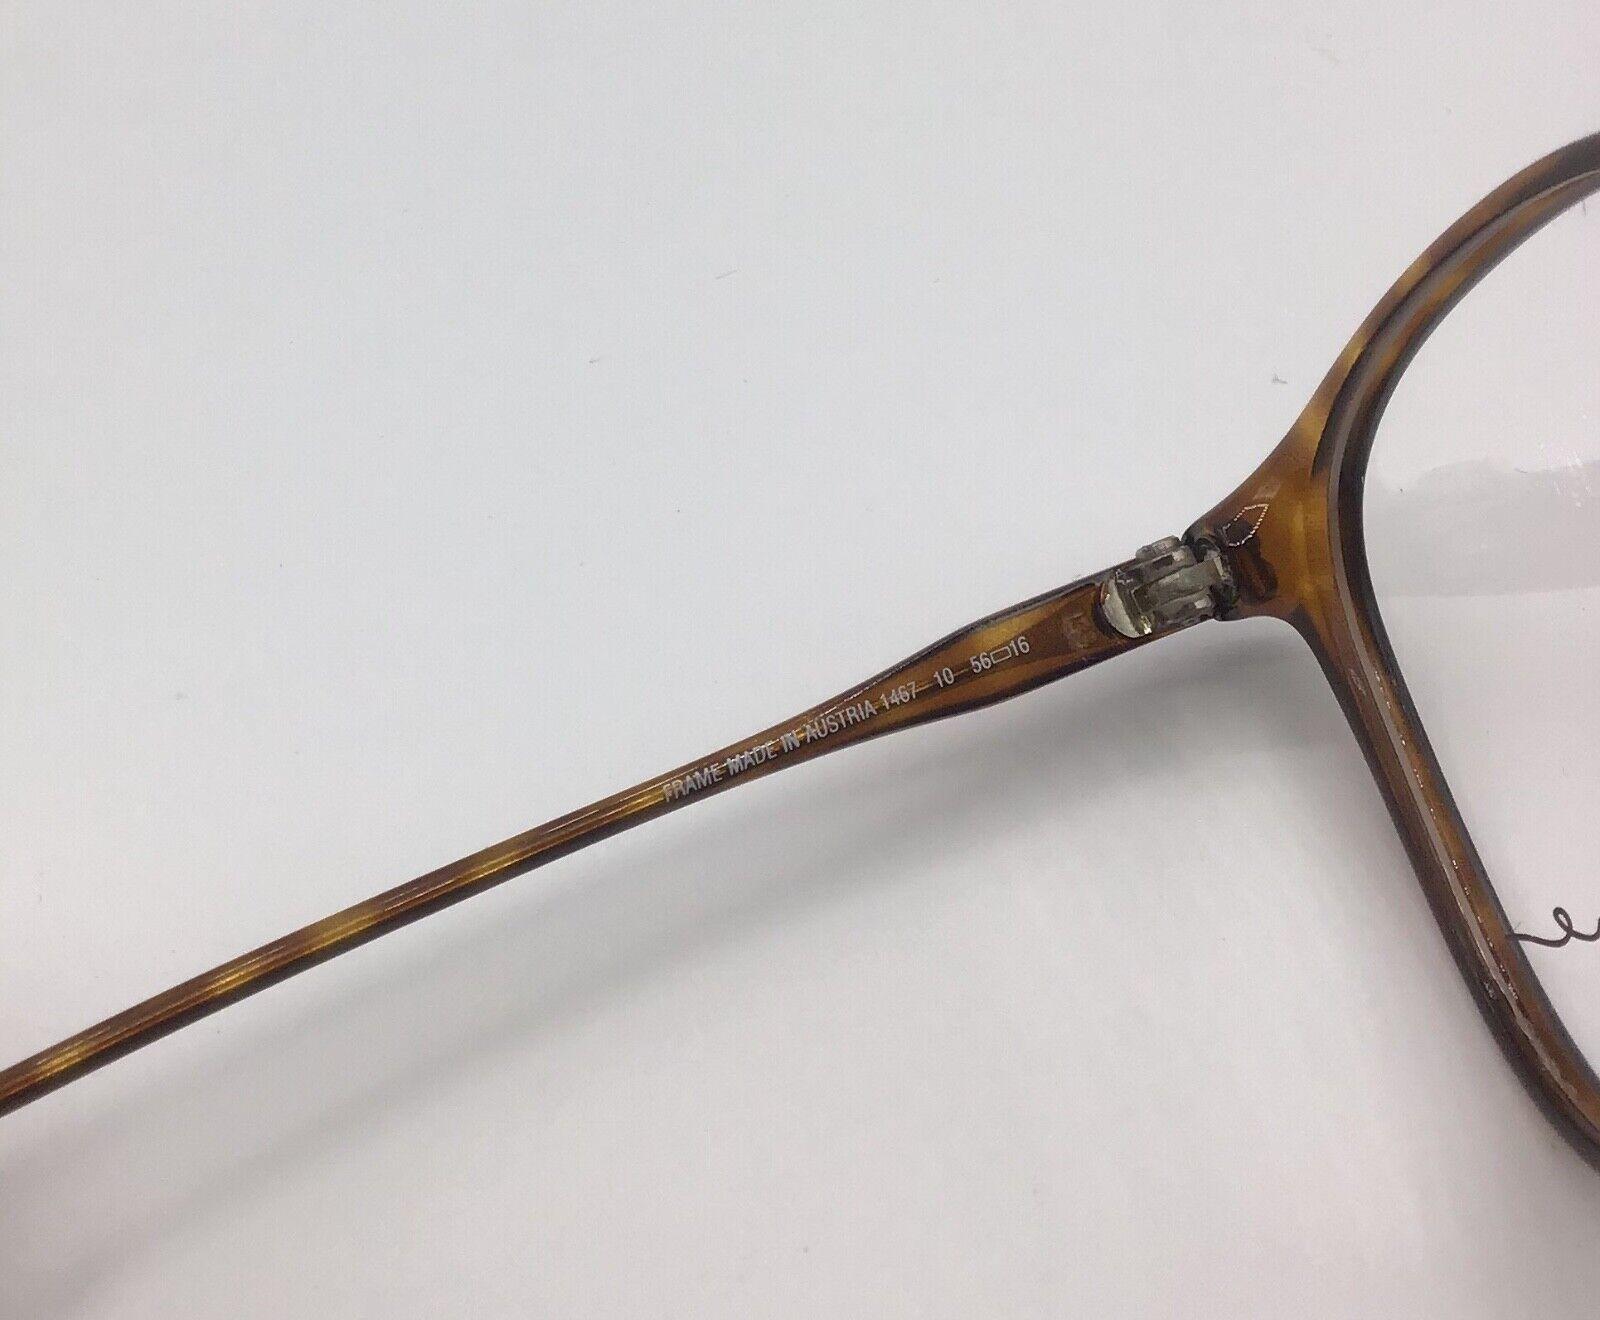 ViennaLine occhiale vintage Eyewear frame Made in Austria brillen 1467 lunettes